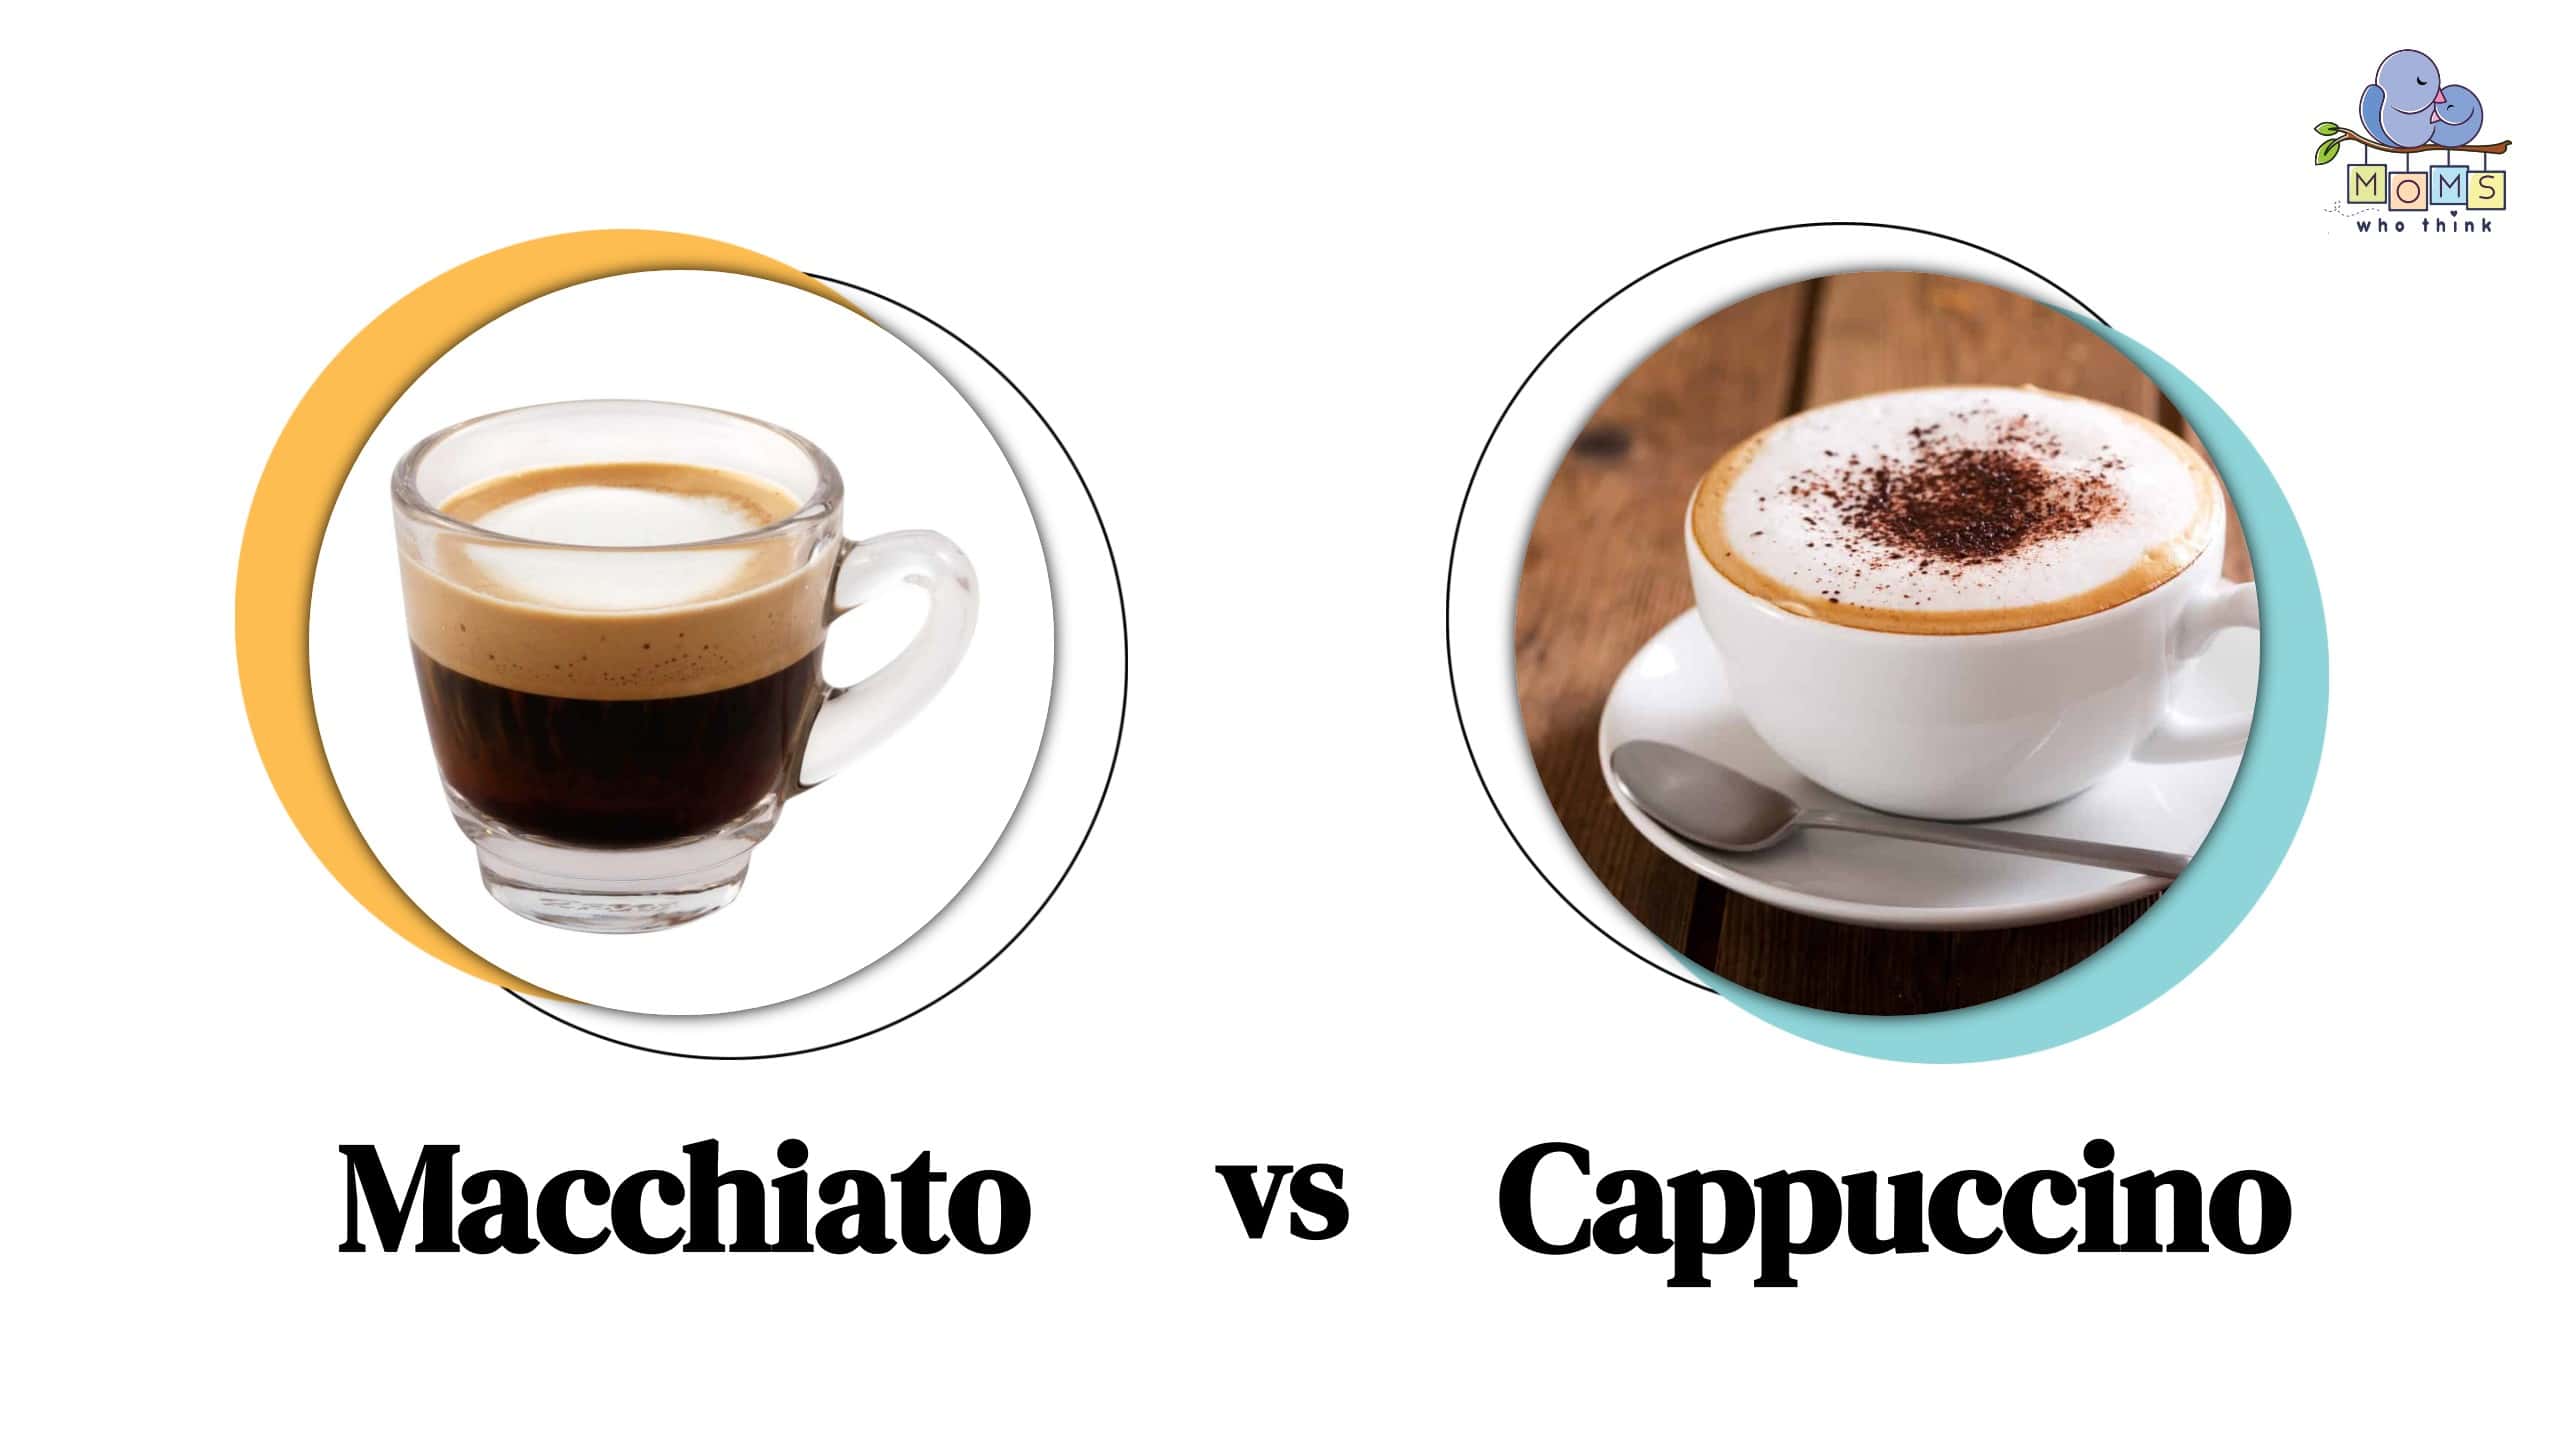 Macchiato vs. Cappuccino: Ingredient, Taste & Calorie Differences